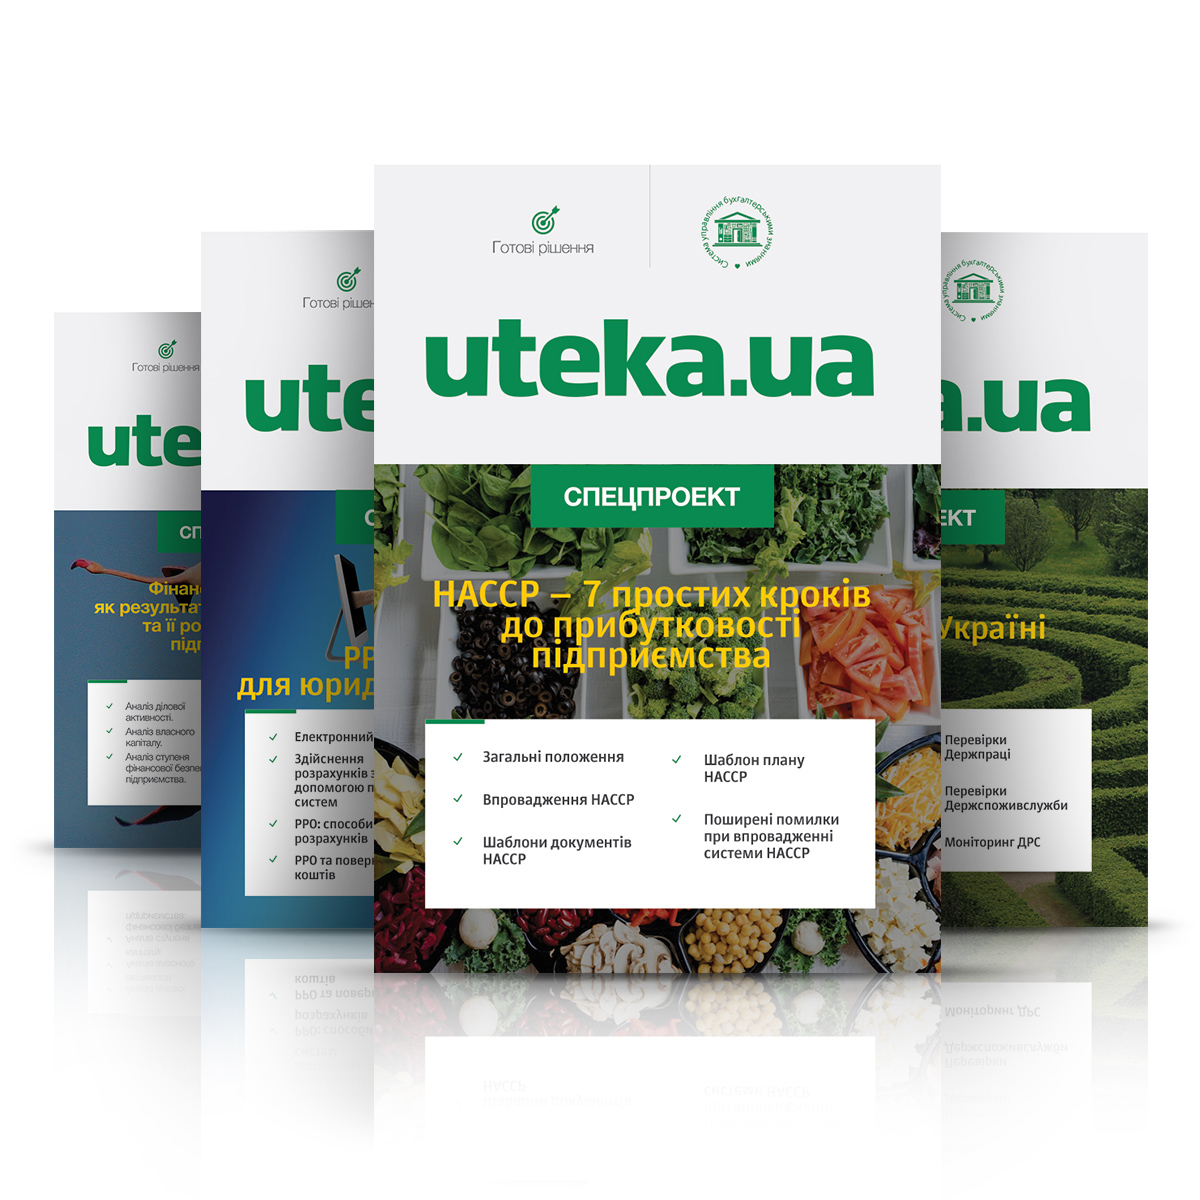 Спецпроекти реадакції Uteka.ua - бухгалтерський онлайн журнал